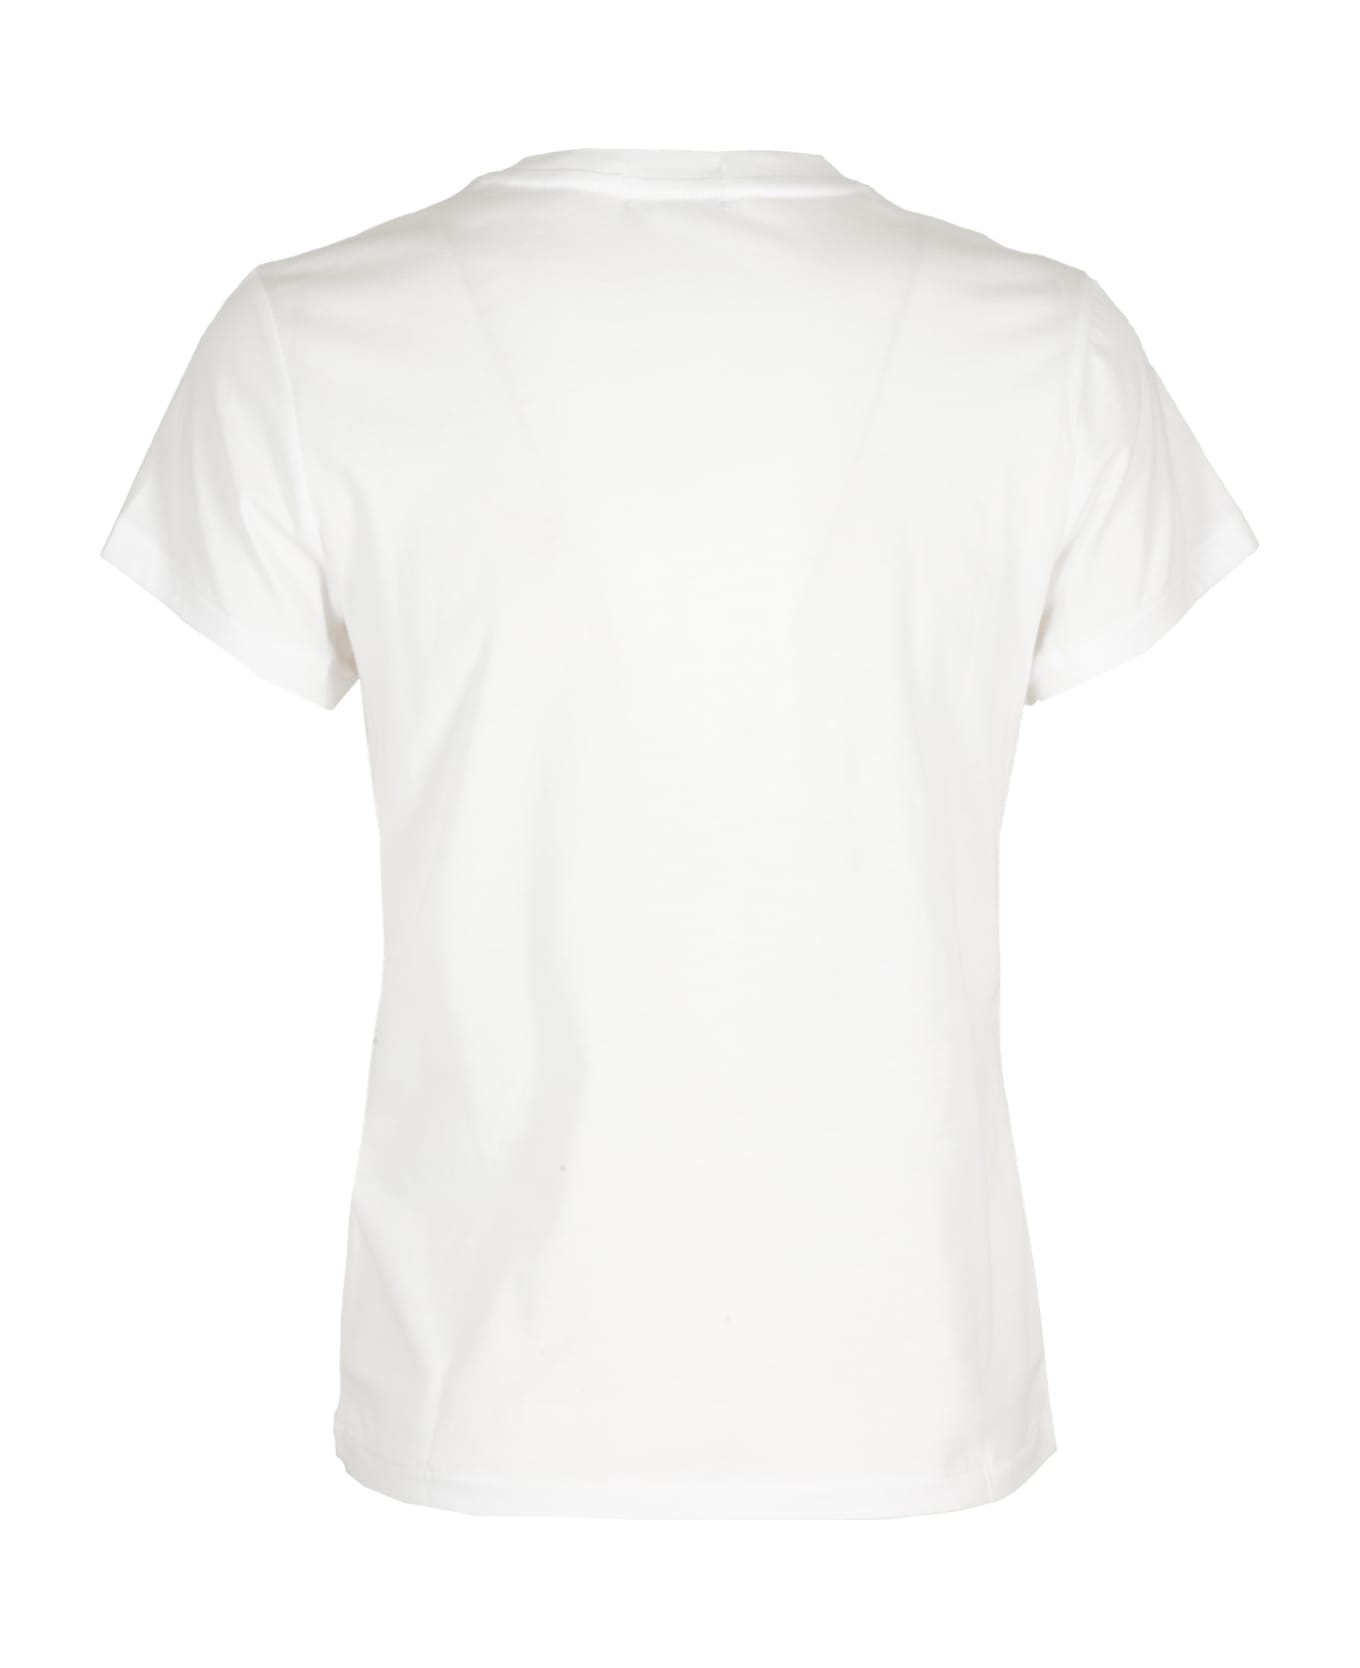 Polo Ralph Lauren New Rltpp - White Tシャツ